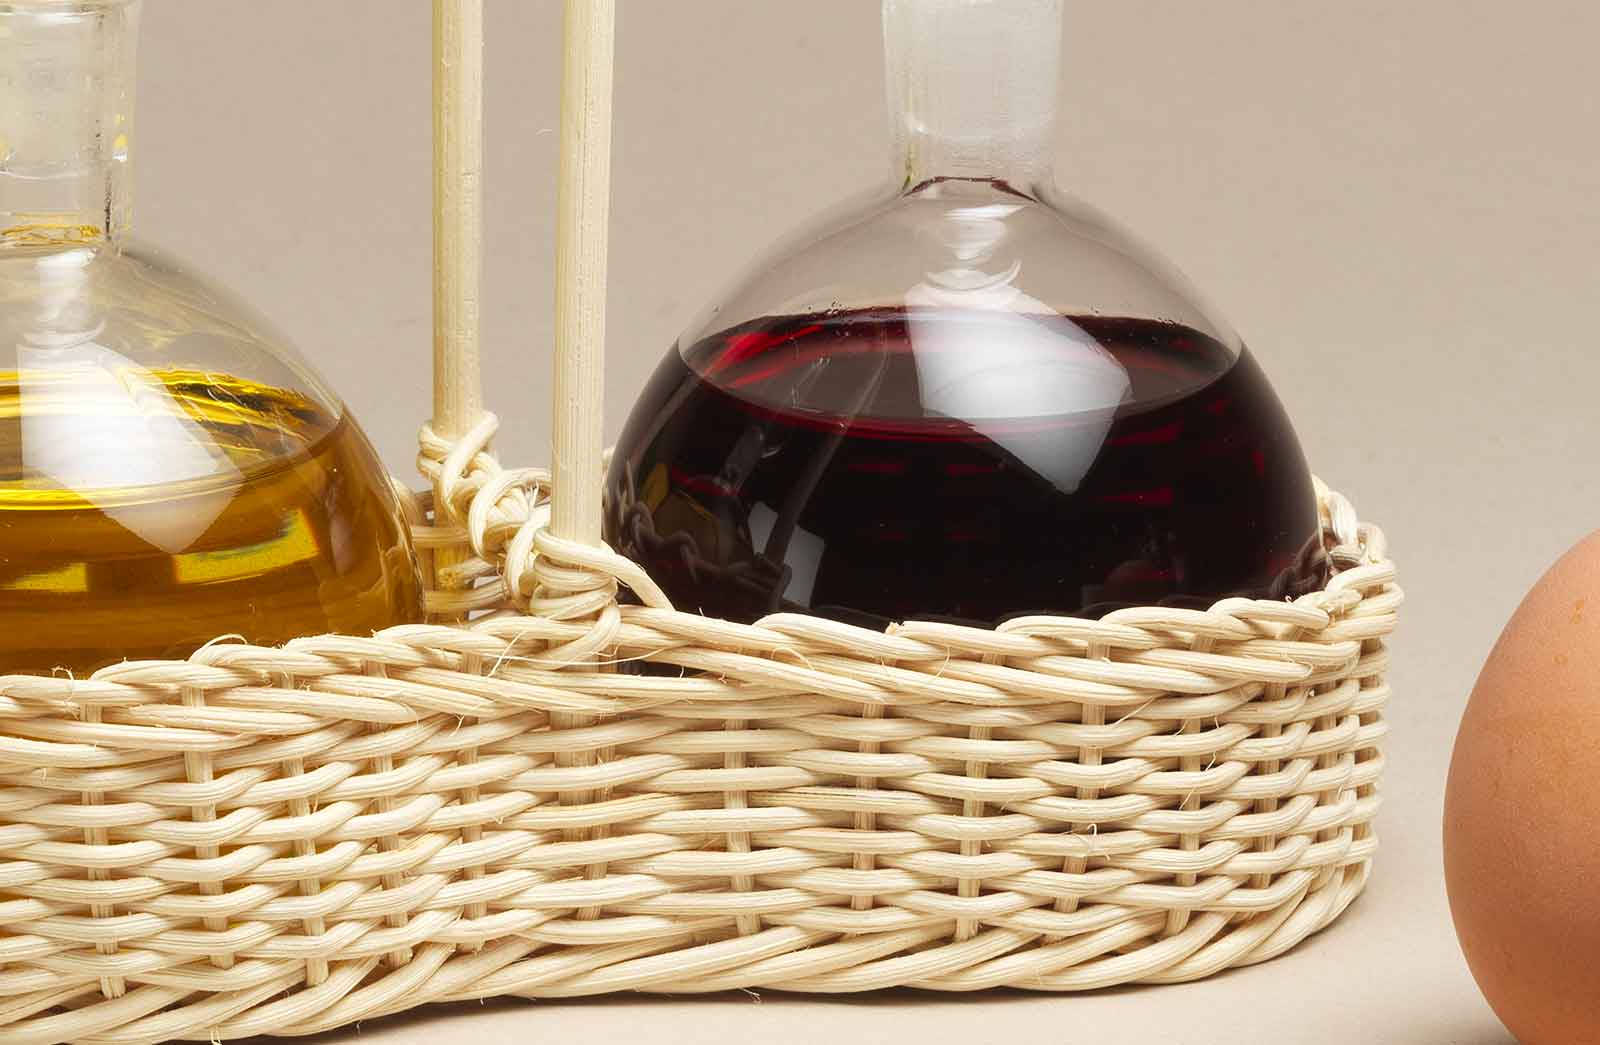 Petunia-Basket-for-oil-and-vinegar